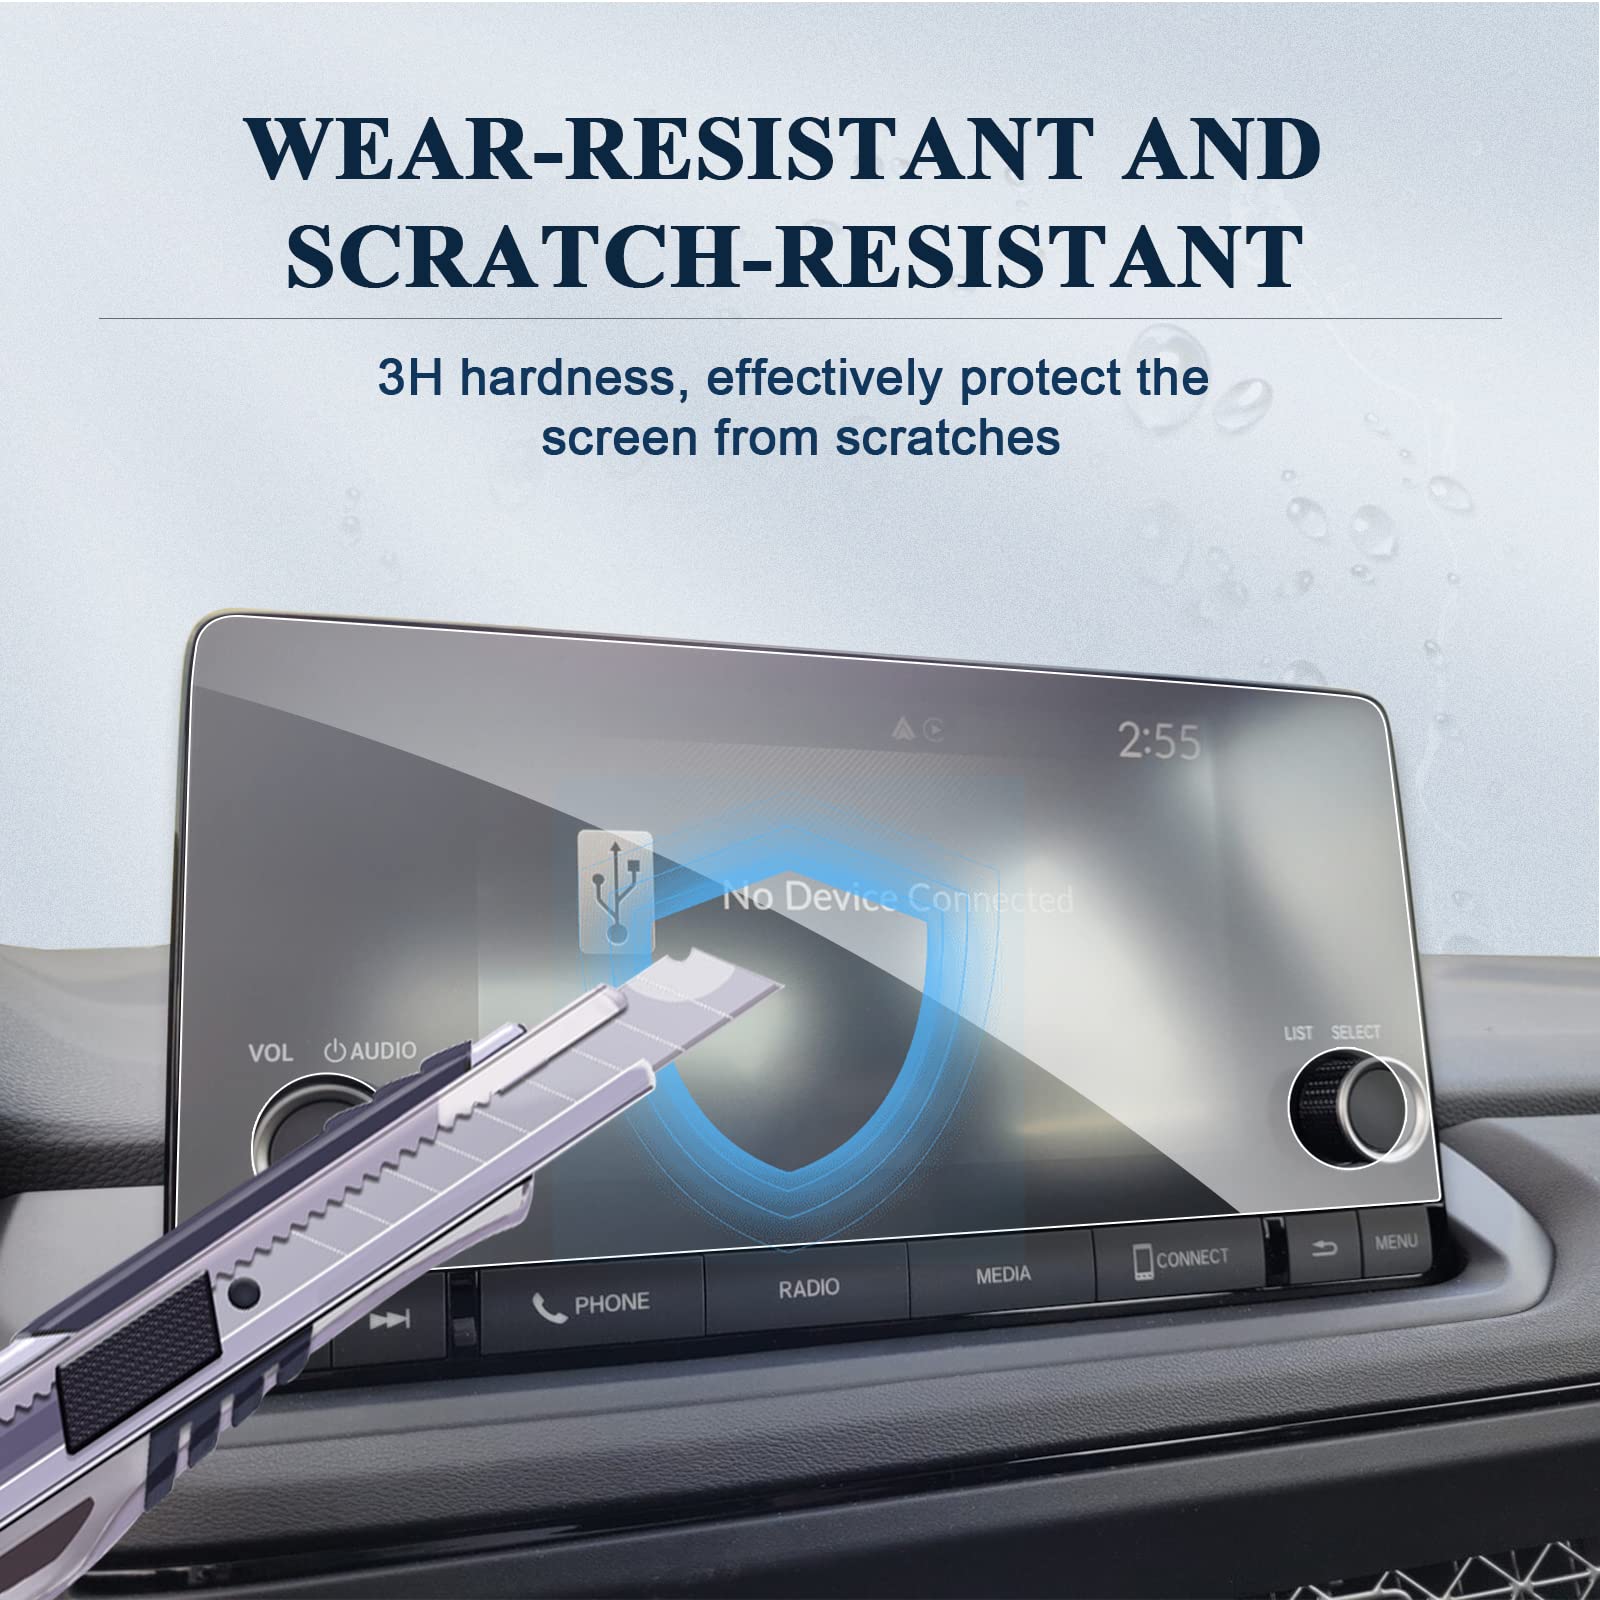 Honda Accord Screen Protector 2018+ - LFOTPP Car Accessories